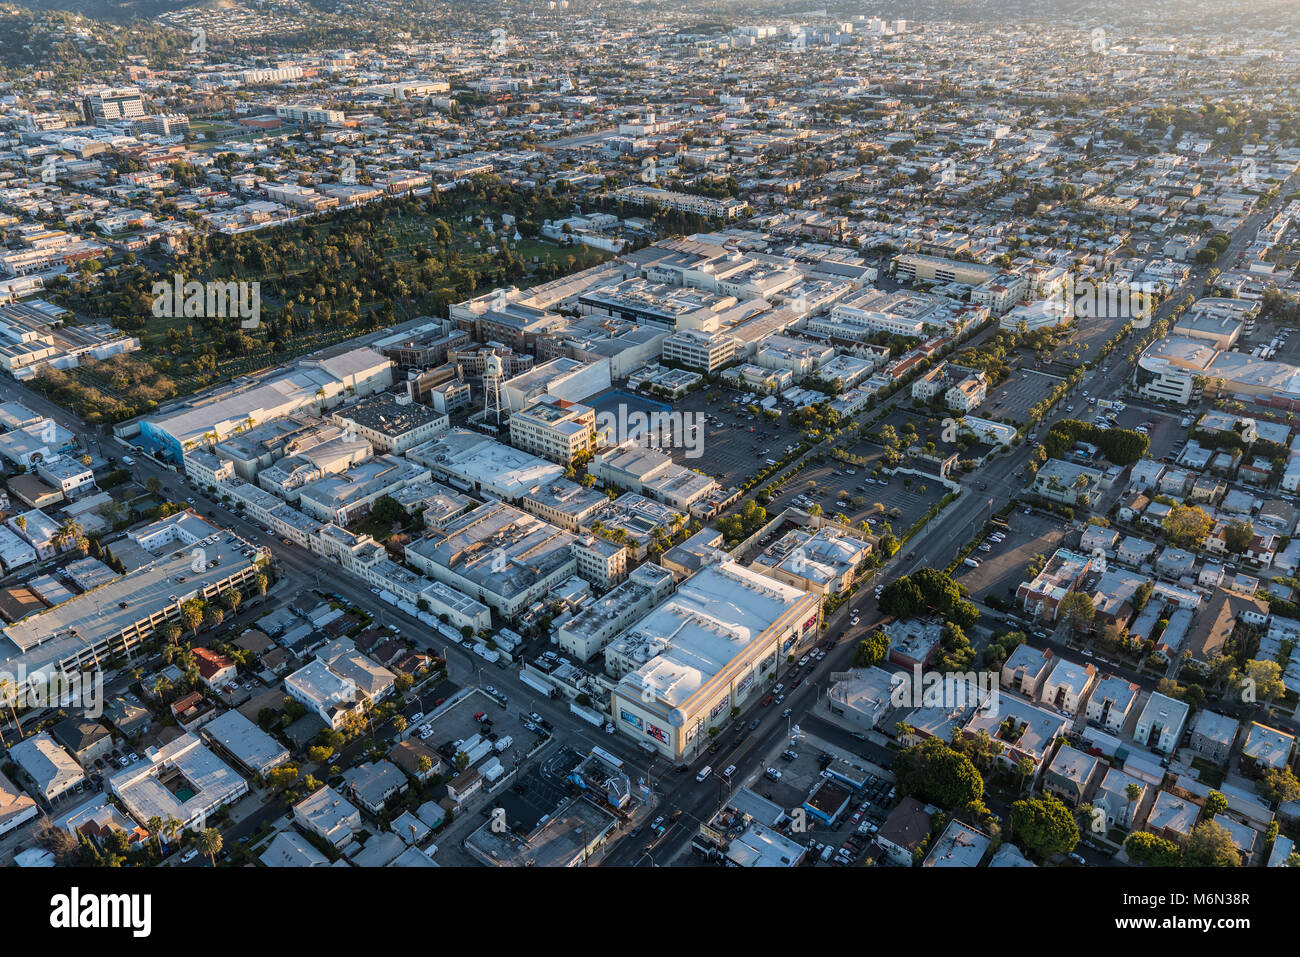 Los Angeles, Kalifornien, USA - 20. Februar 2018: Luftaufnahme von Hollywood und Paramount Pictures Studio auf Melrose Av. Stockfoto